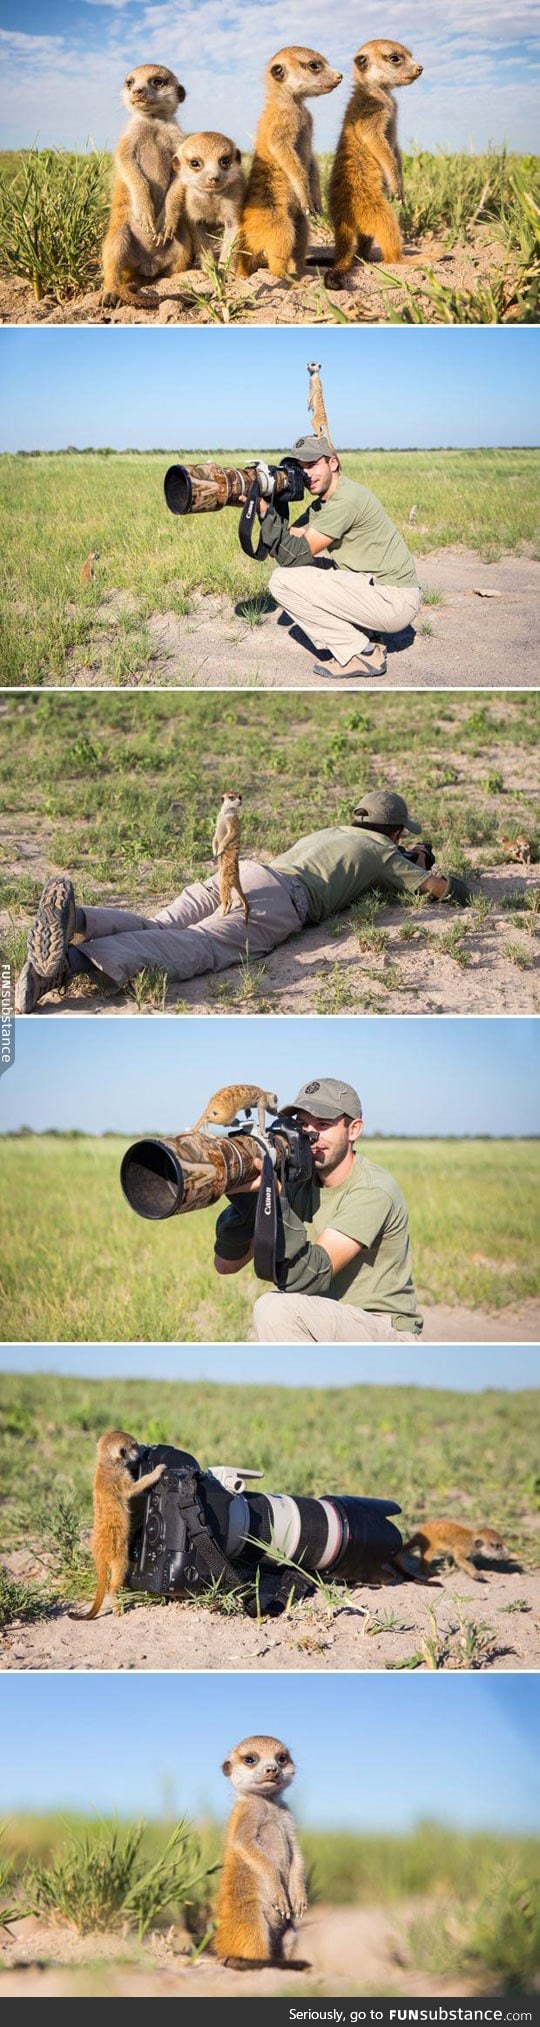 Baby meerkats meet photographer